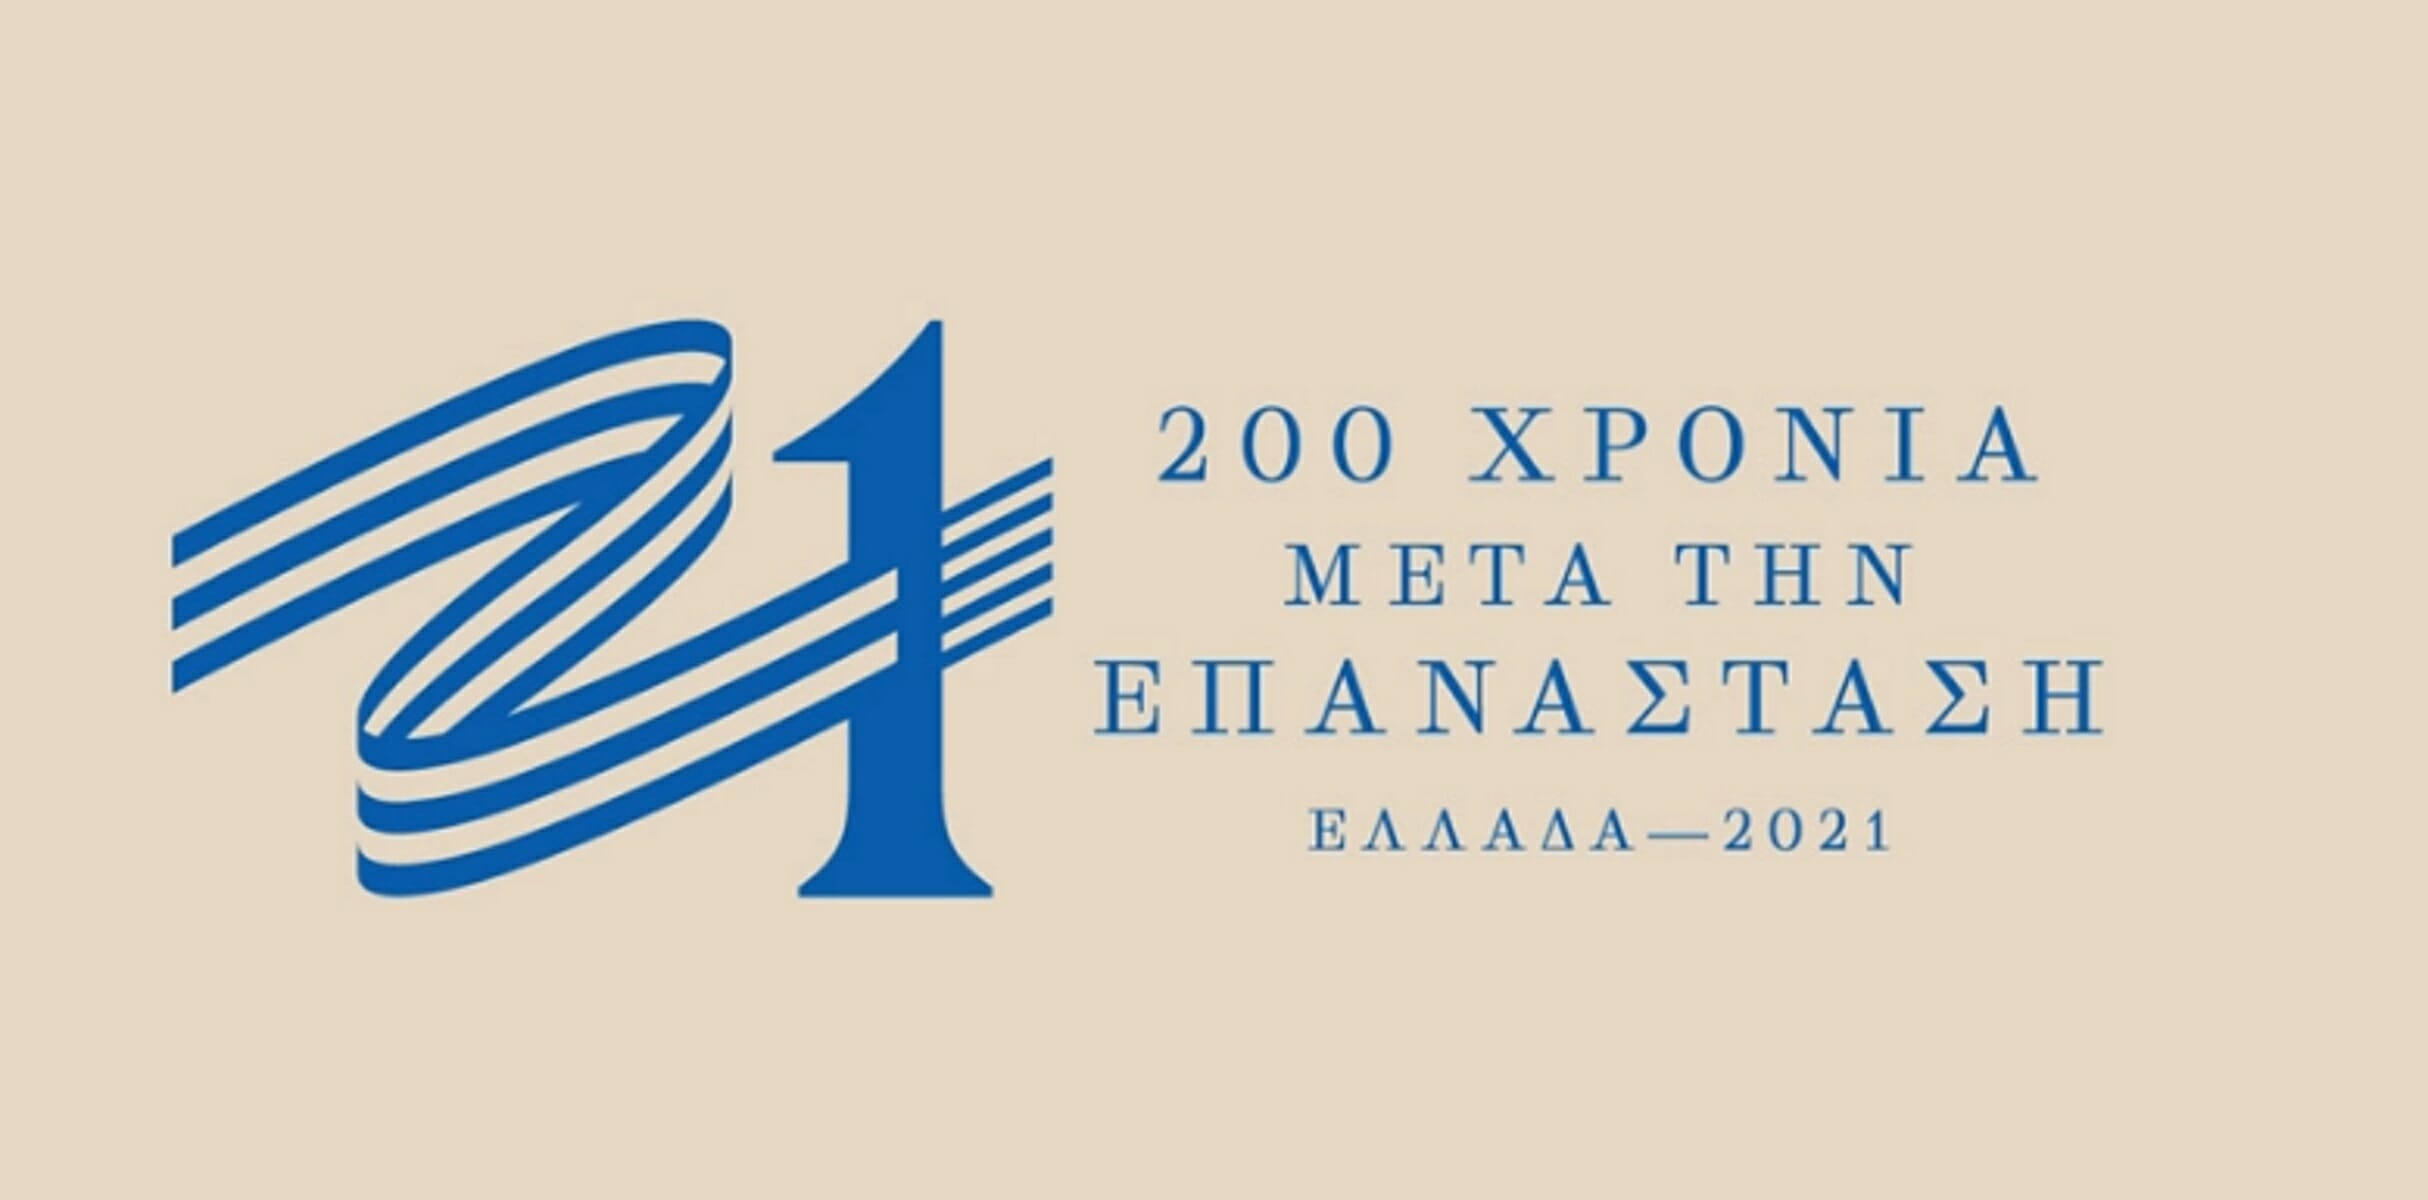 “Ελλάδα 2021”: Ο δημιουργός του σήματος απαντά στους επικριτές [video]